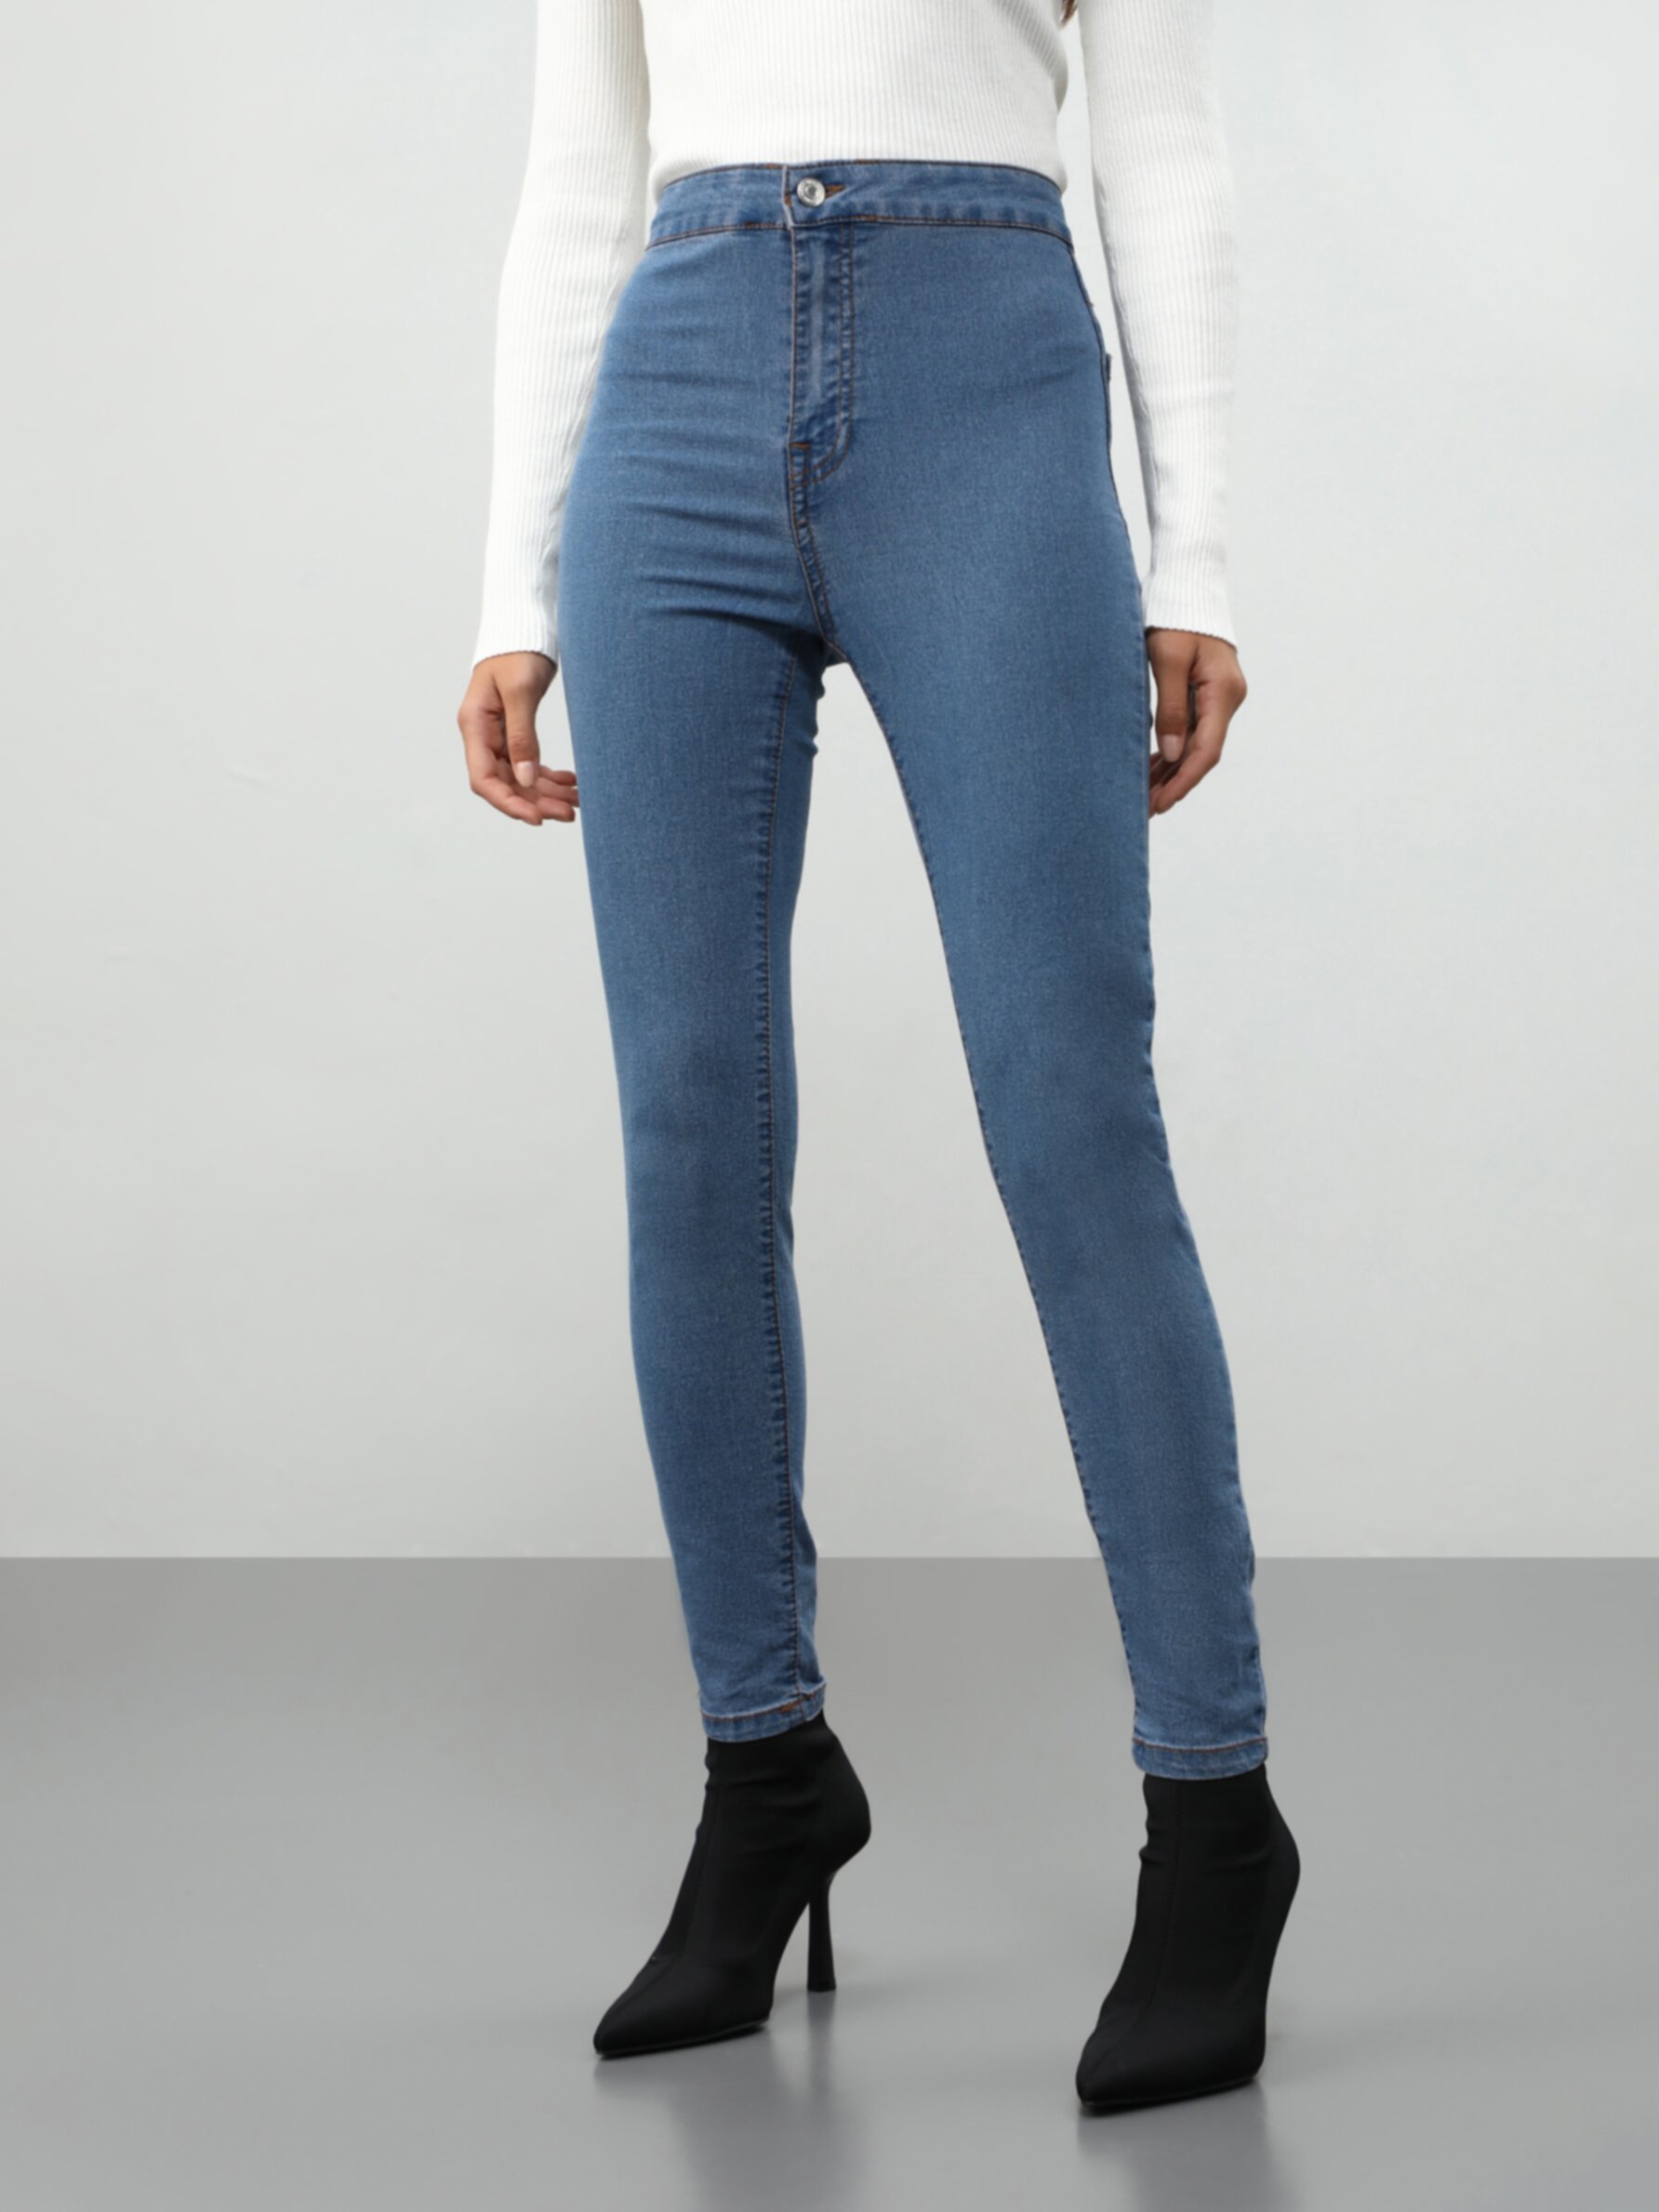 Dunkelblau L DAMEN Jeans Basisch Lefties Jegging & Skinny & Slim Rabatt 72 % 